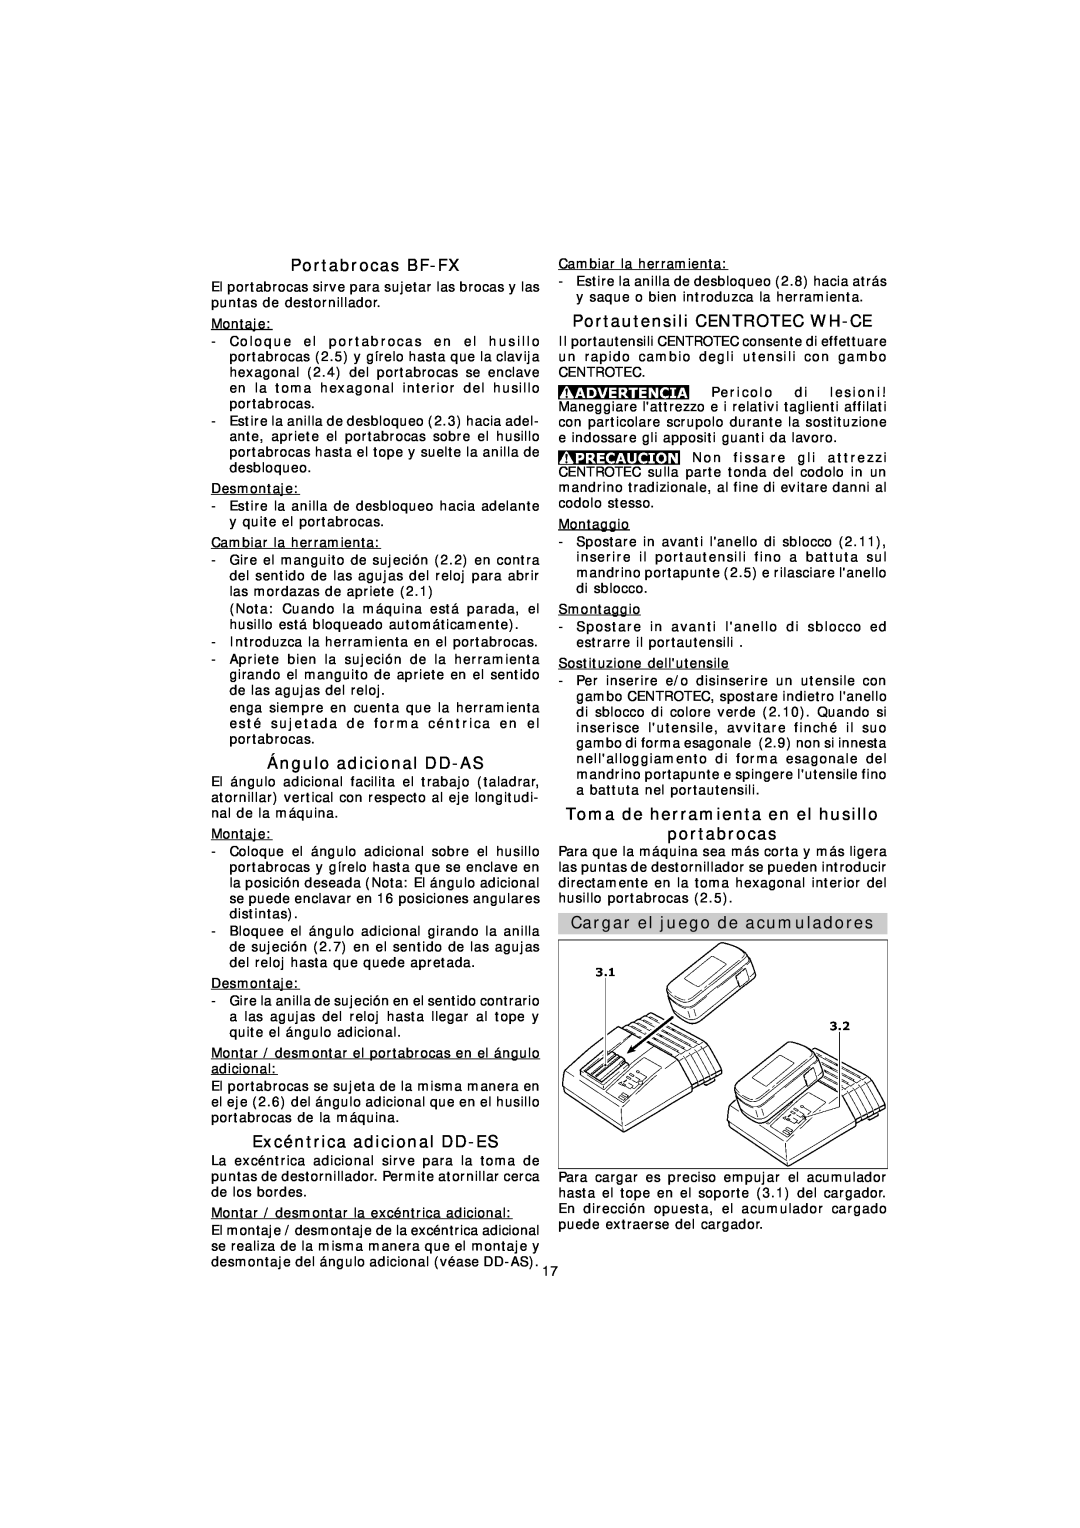 Festool TDK 12, TDK 15.6 instruction manual Portabrocas BF-FX, Ángulo adicional DD-AS, Excéntrica adicional DD-ES 